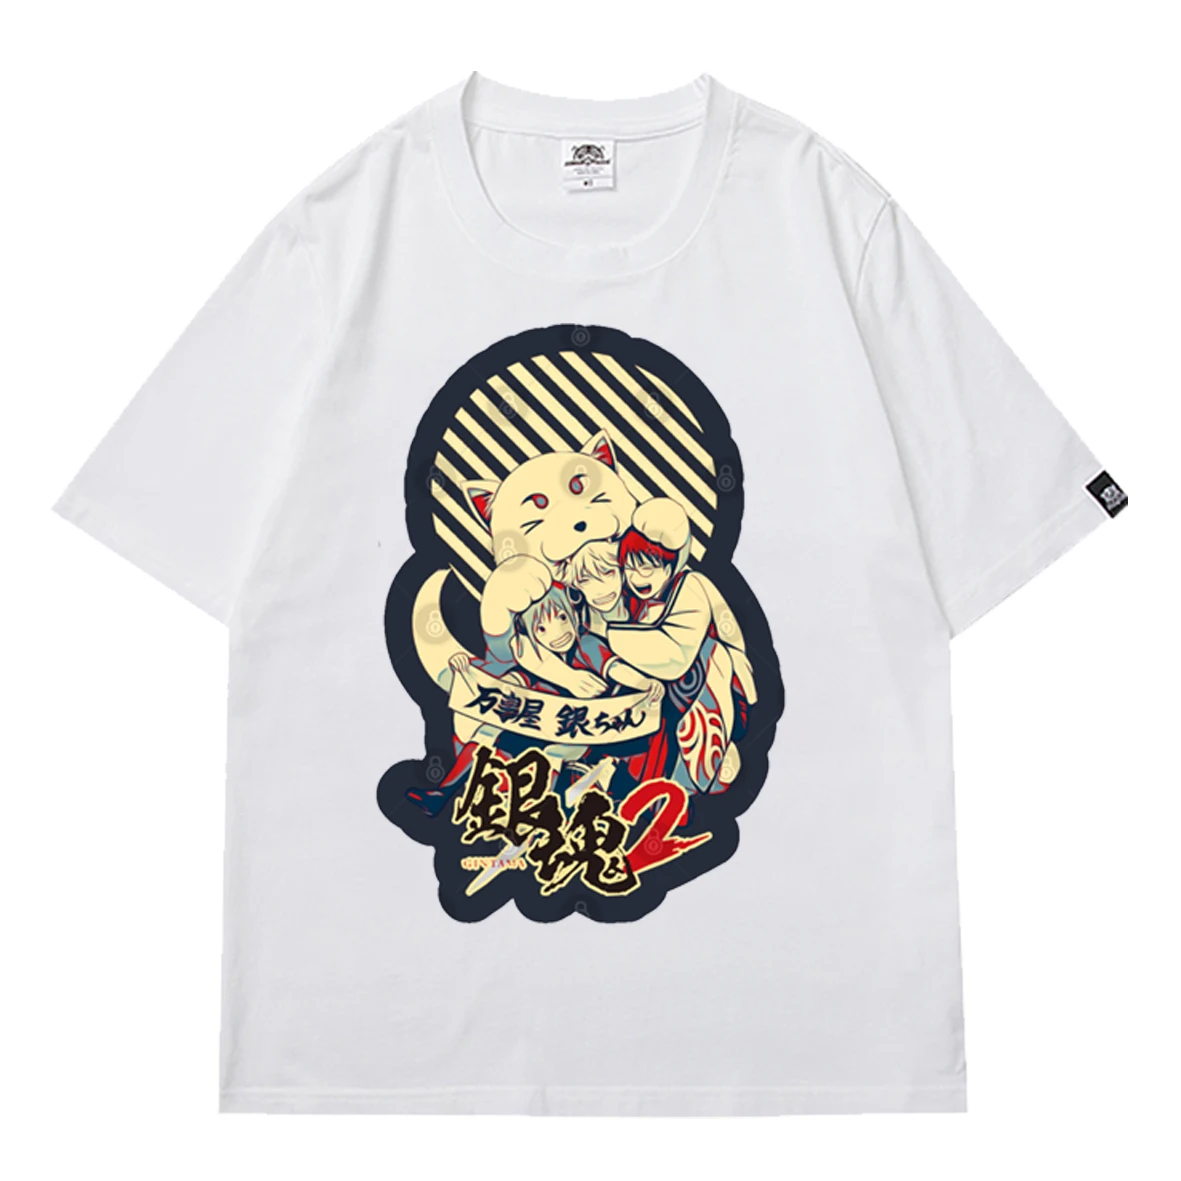 

Funny Gintama Men's T-shirt Anime Short Sleeve Tee Streetwear Tops Harajuku Teens Boys Casual Spring/Summer Short Sleeve Tshirt